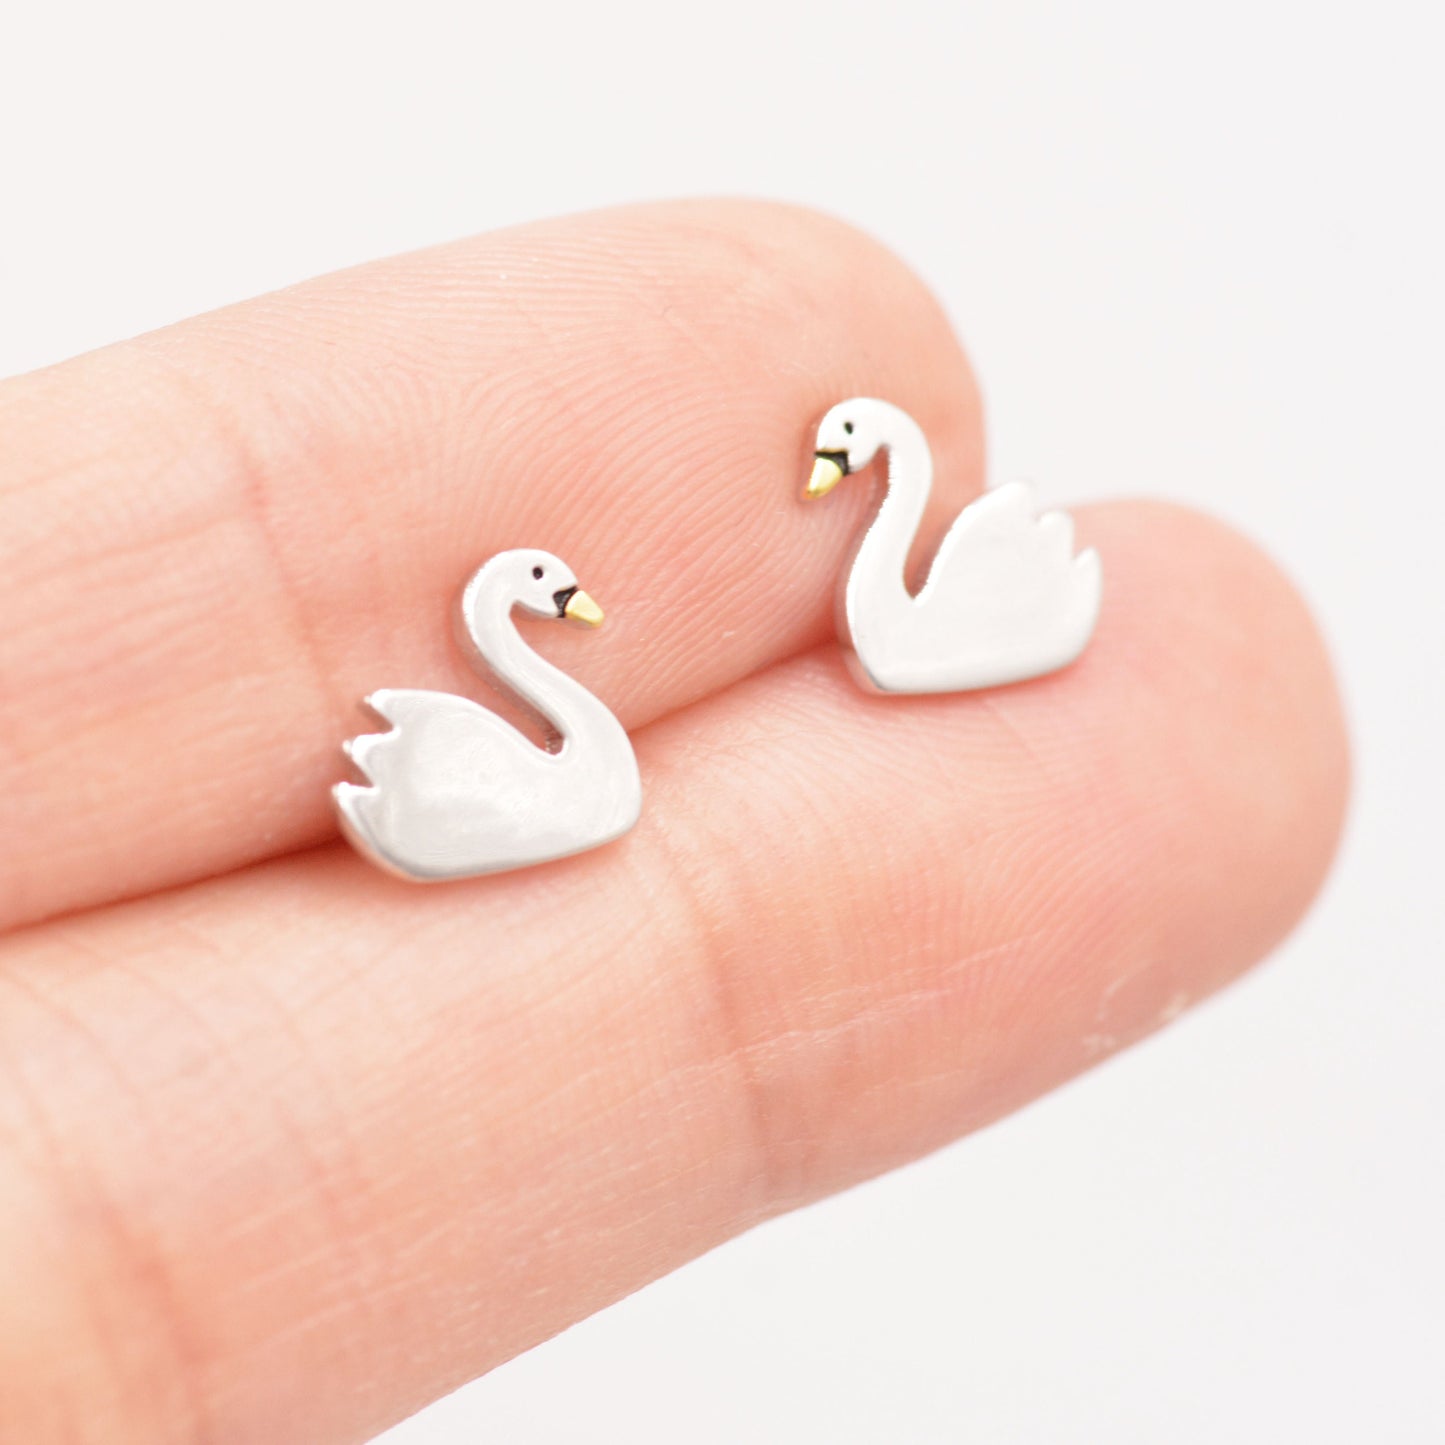 Swan Stud Earrings in Sterling Silver - Animal Stud Earrings - Bird Earrings  - Cute,  Fun, Whimsical